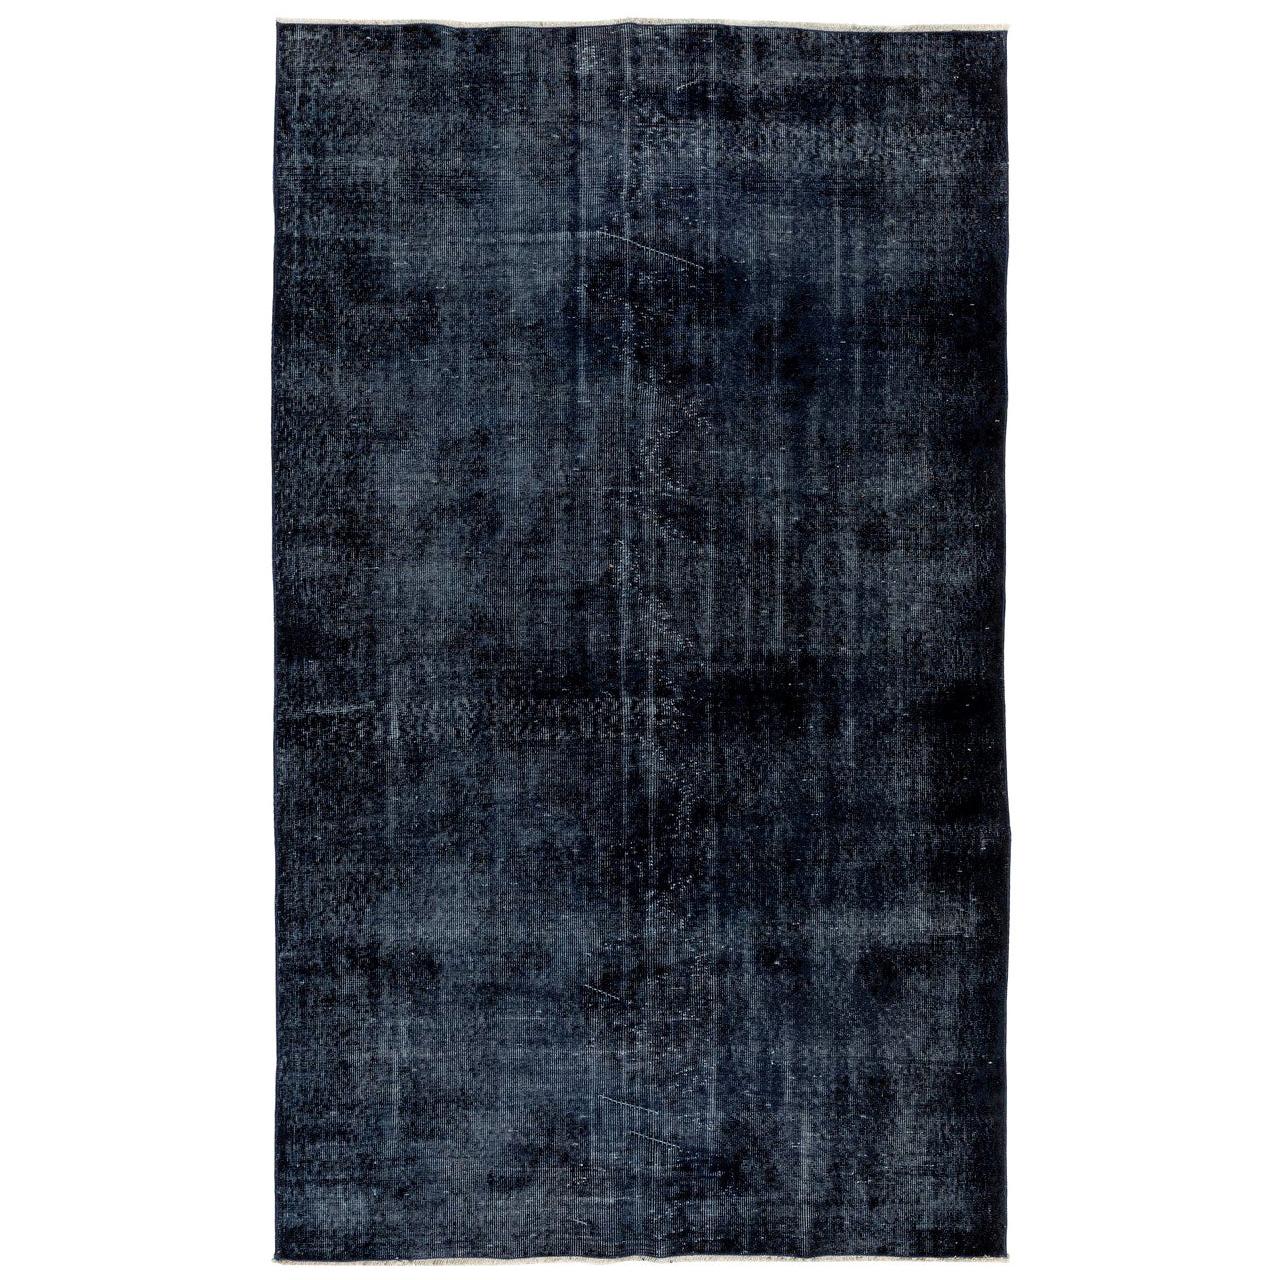 5.6x9.6 ft Tapis en laine vintage fait à la main en bleu marine uni pour les intérieurs modernes